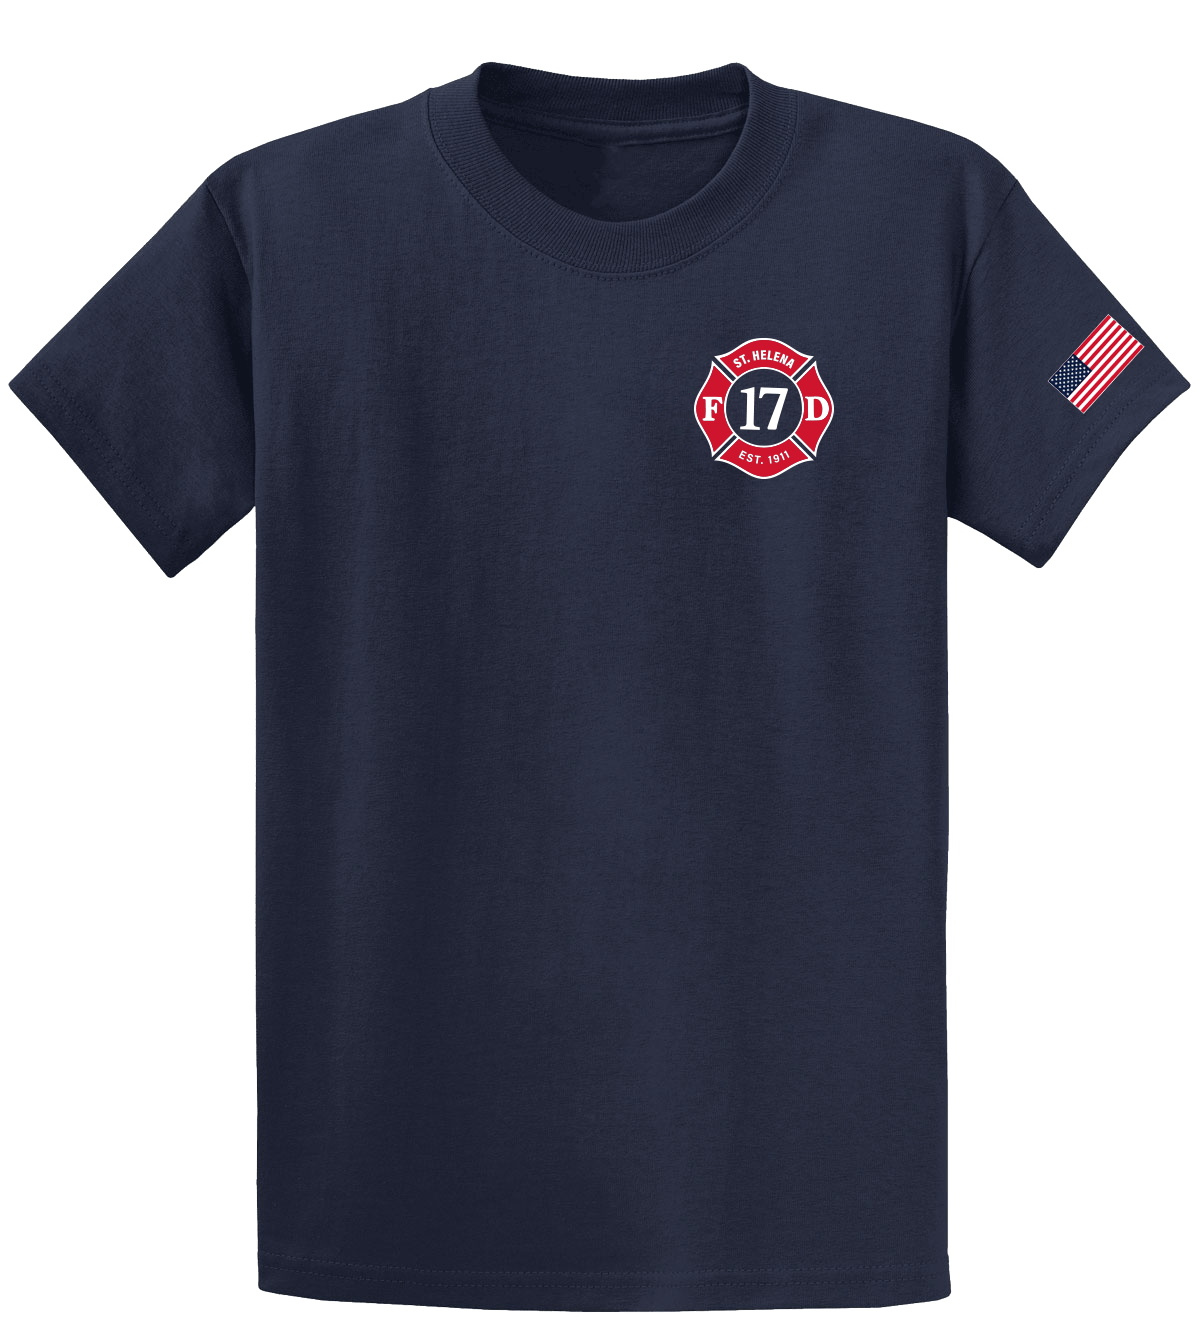 St. Helena Fire T-Shirts